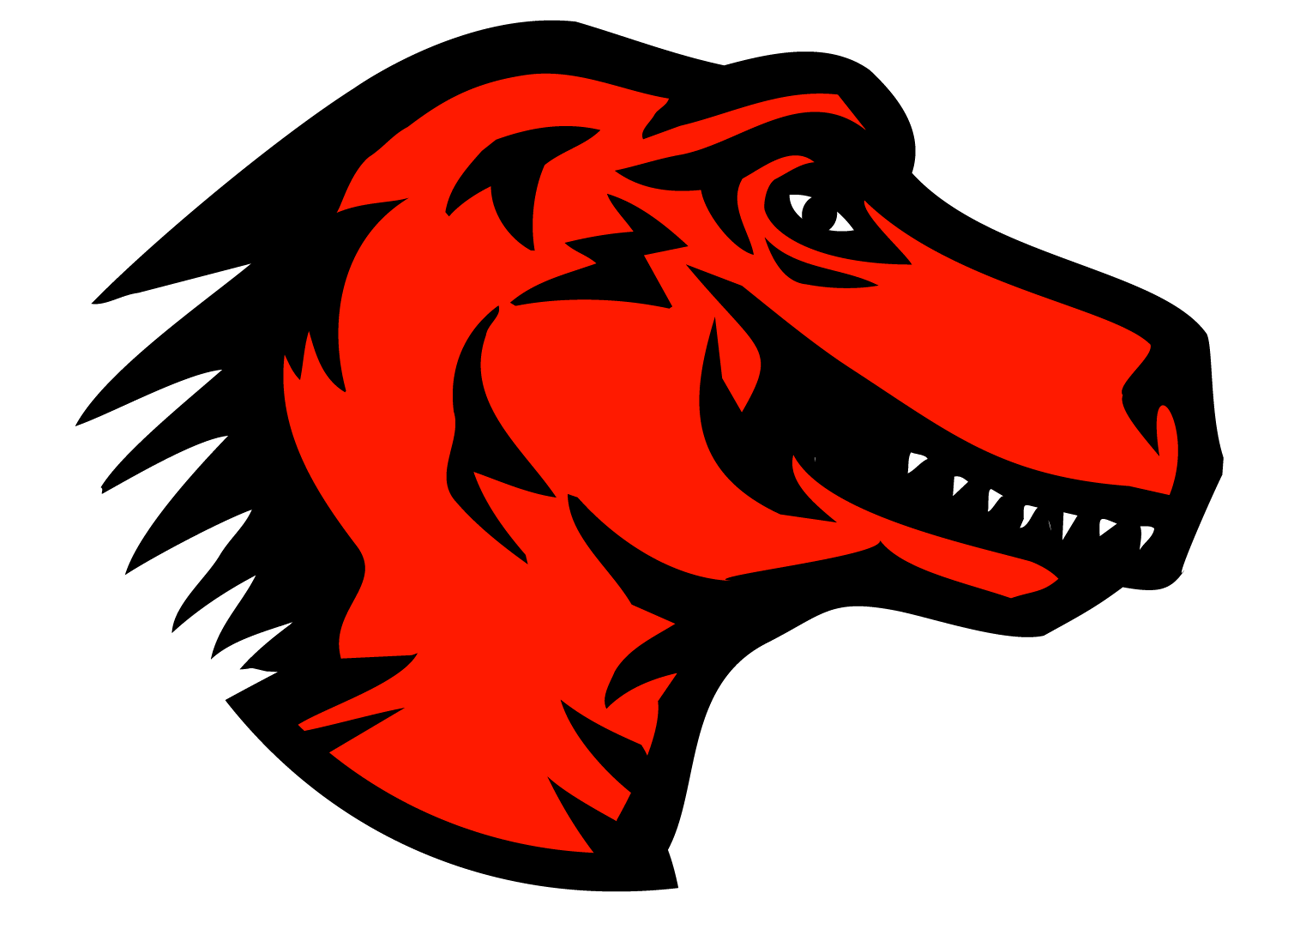 Dinosaur Office Logo - Mozilla dinosaur head logo.png